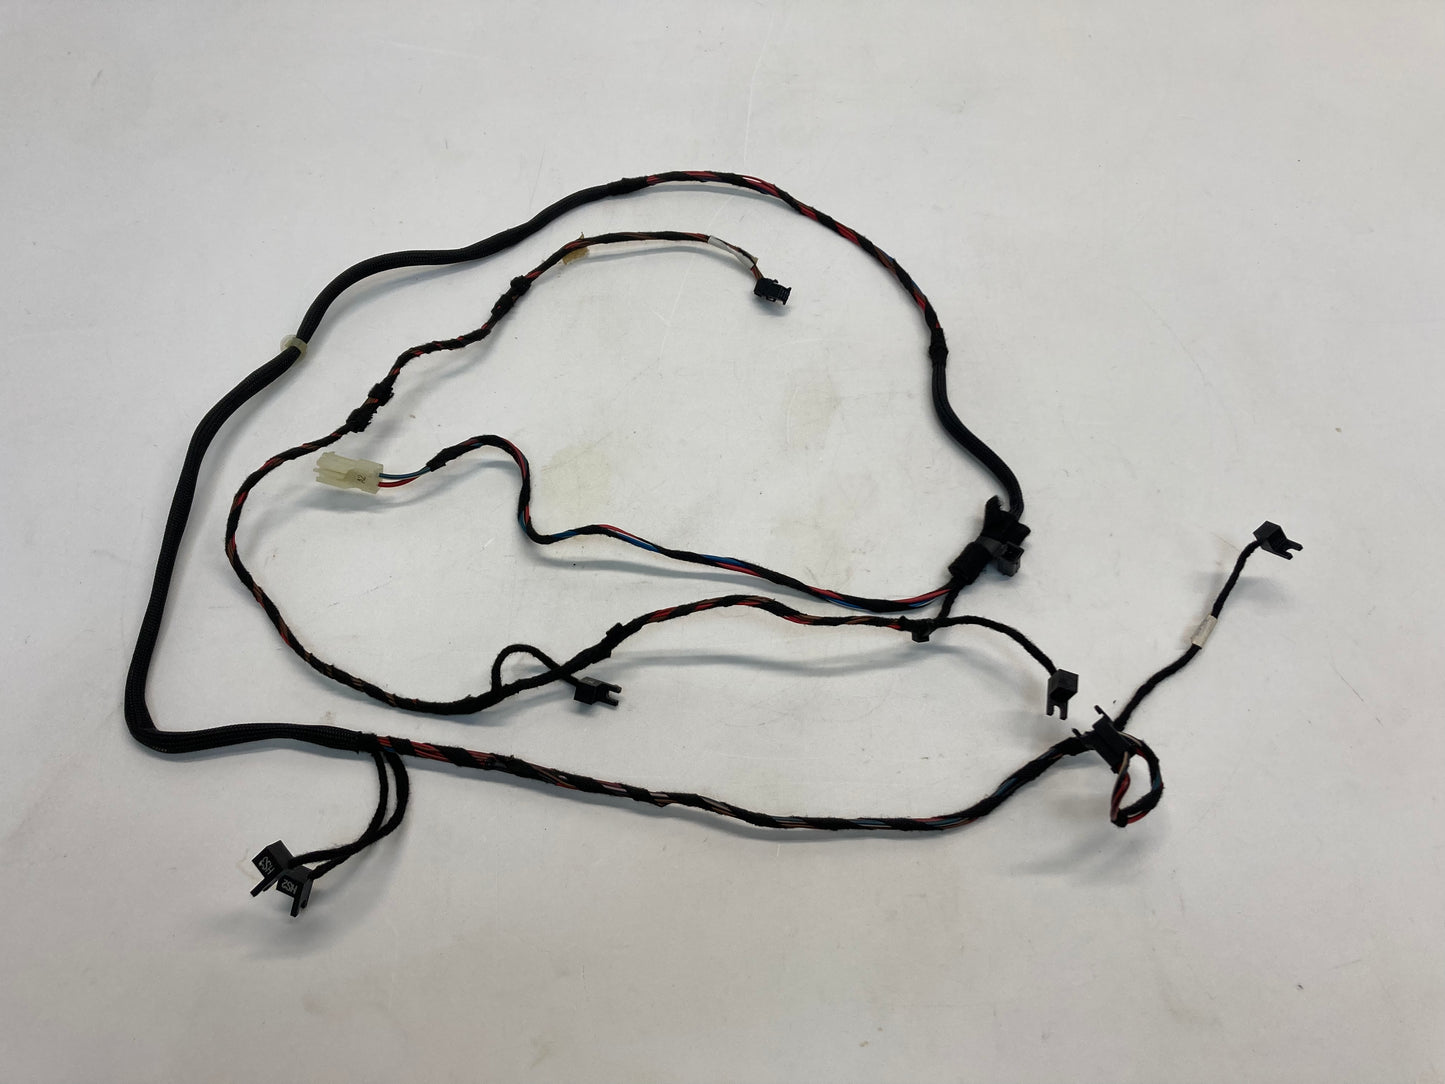 Mini Cooper Convertible Top Wire Harness 54347079879 05-08 R52